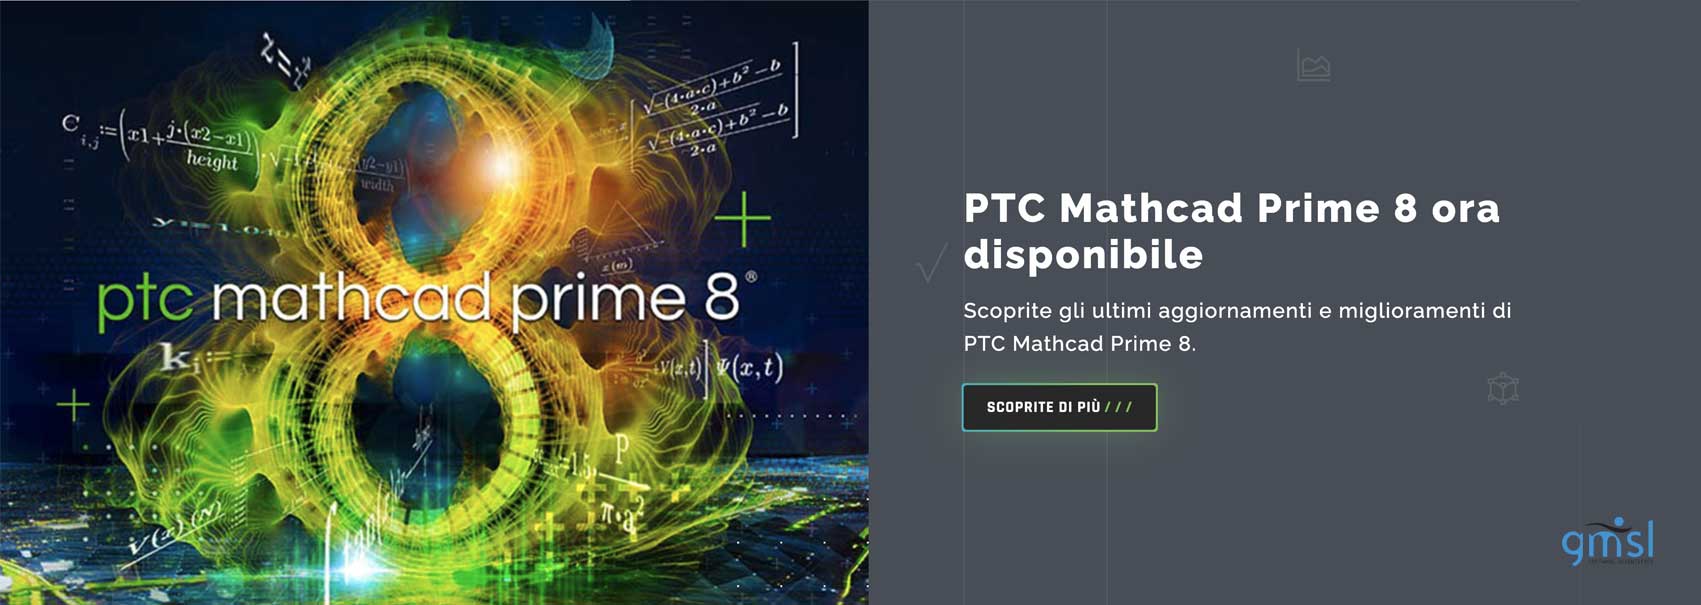 PTC-mathcad-prime-8 Home 